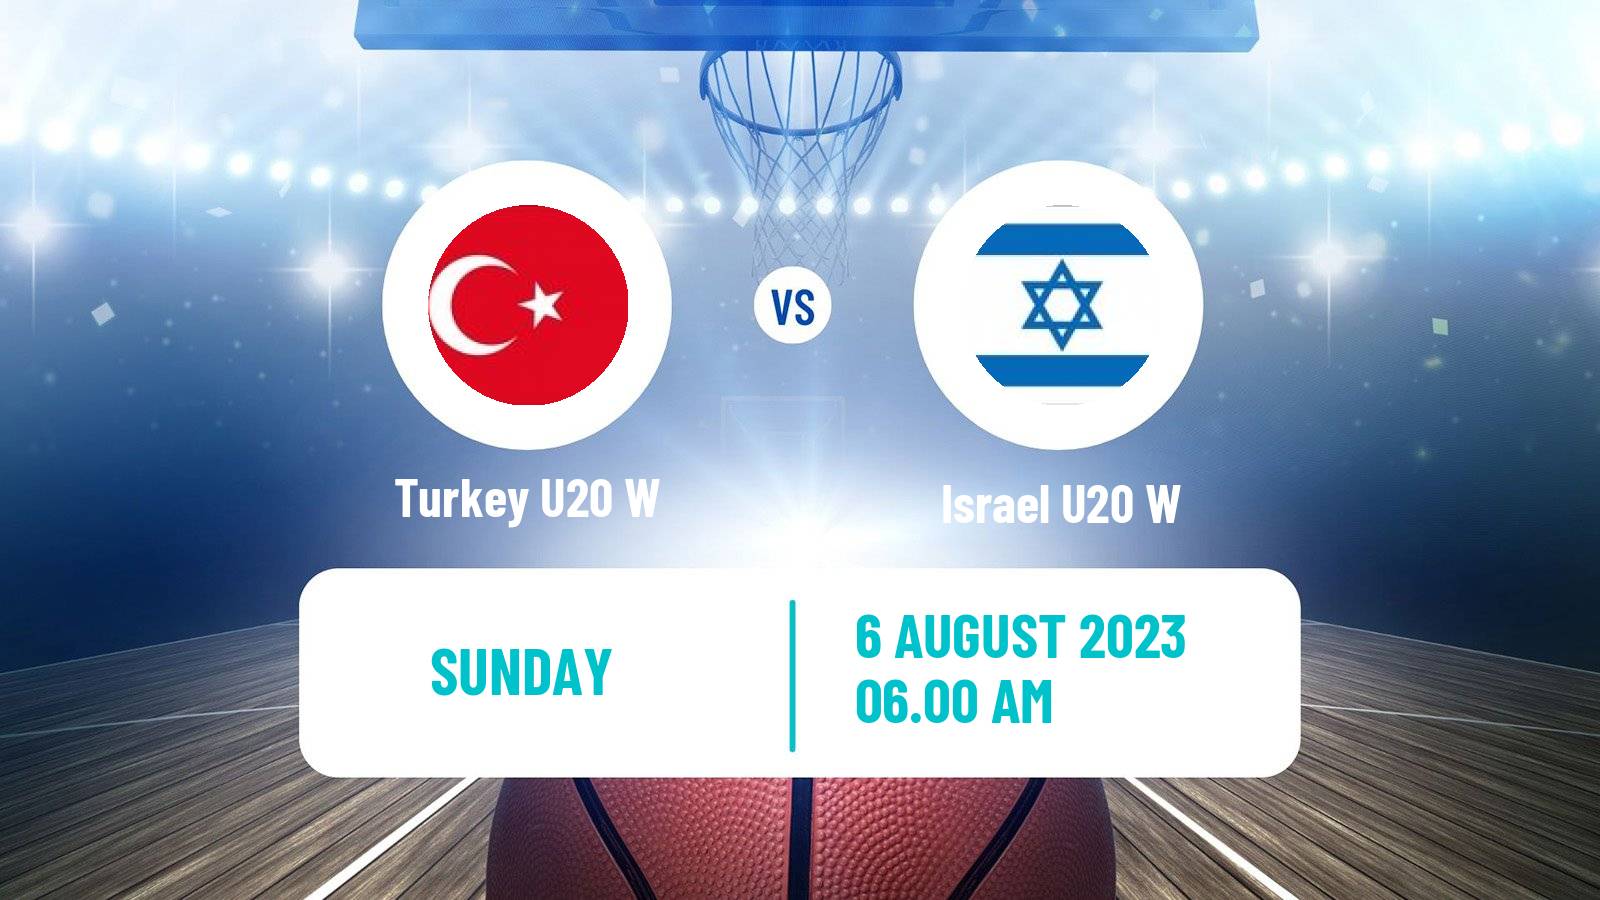 Basketball European Championship U20 Basketball Women Turkey U20 W - Israel U20 W